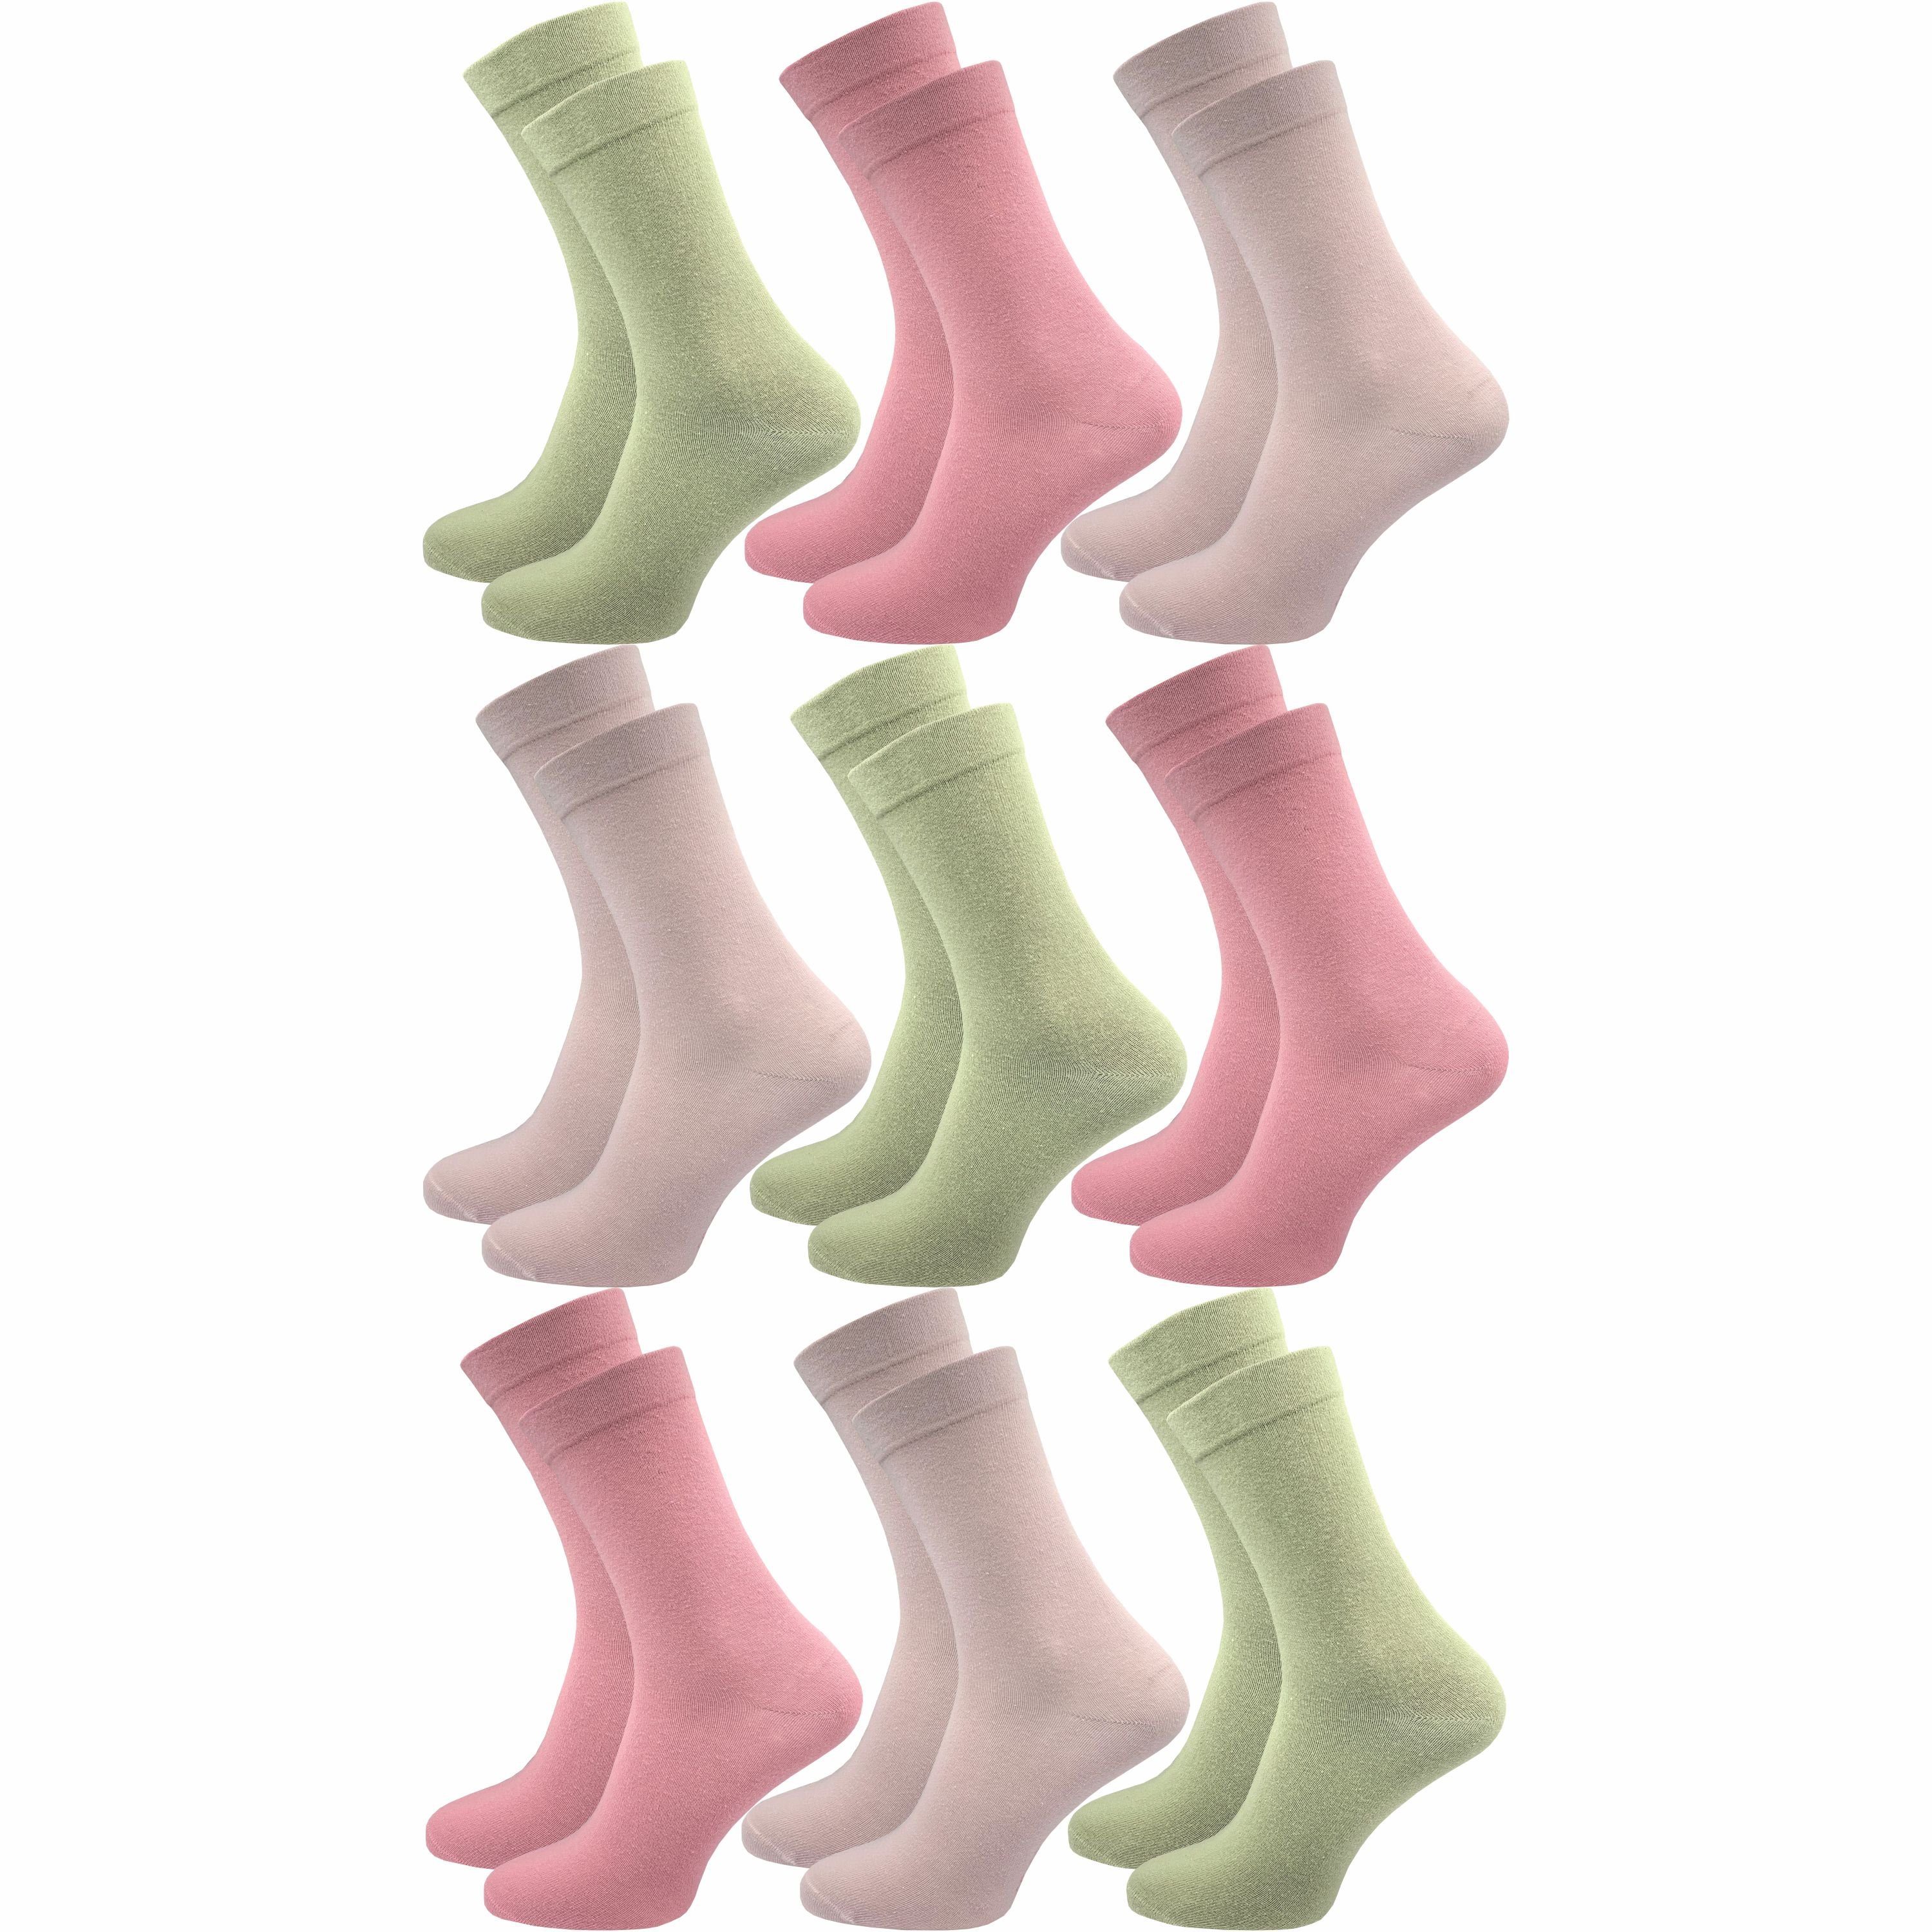 GAWILO Diabetikersocken für Damen - Ohne Gummibund - Ohne drückende Naht - Extra weit (9 Paar) Venensocke mit hohem Anteil Baumwolle sorgt für angenehmes Fußklima